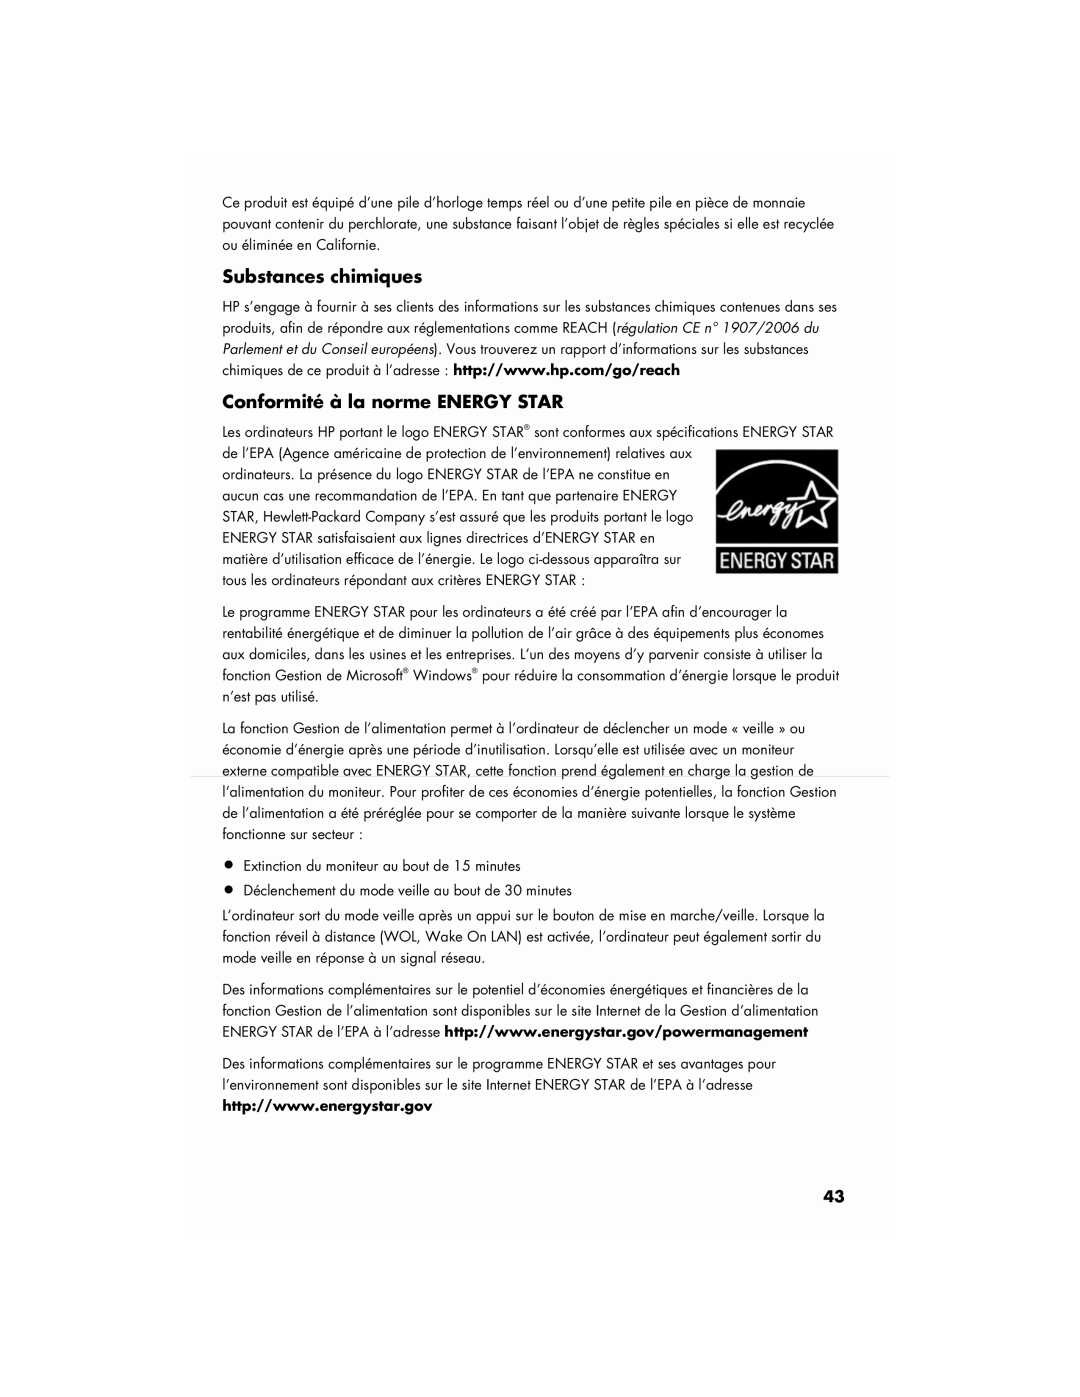 HP S3905F, SR5908F manual Substances chimiques Conformité à la norme Energy Star 